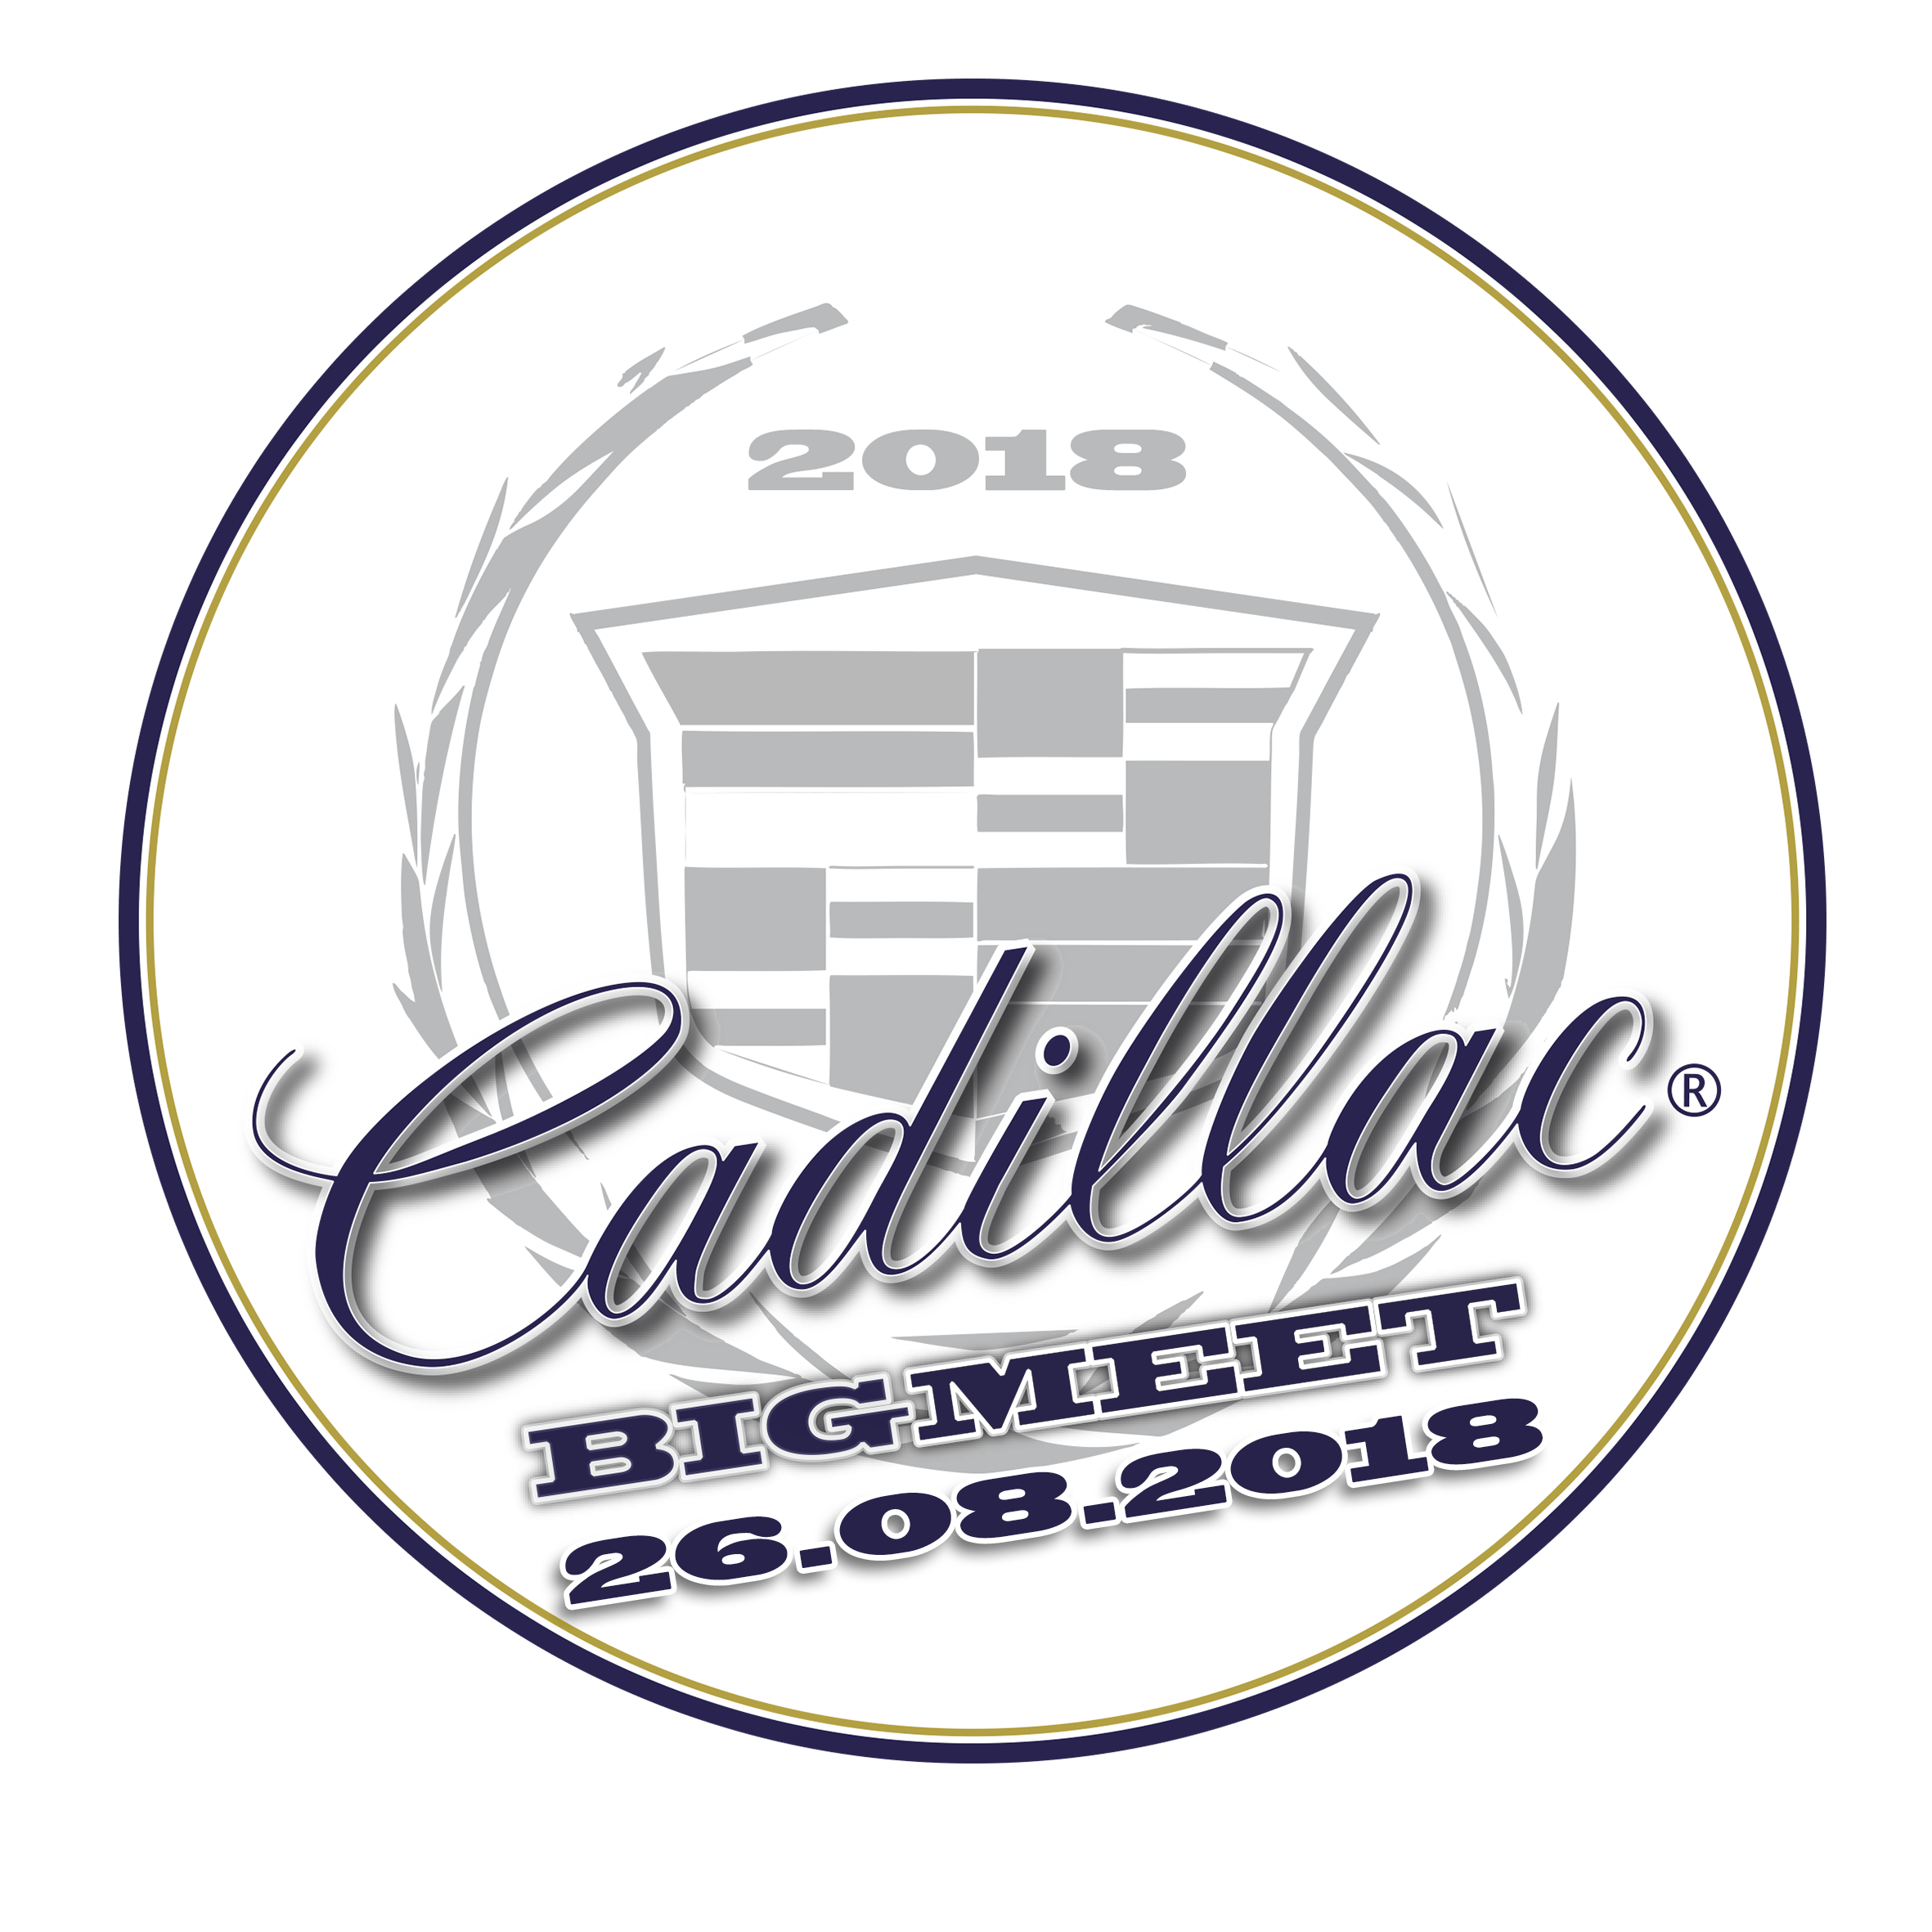 Big Cadillac Logo - CBM 2016